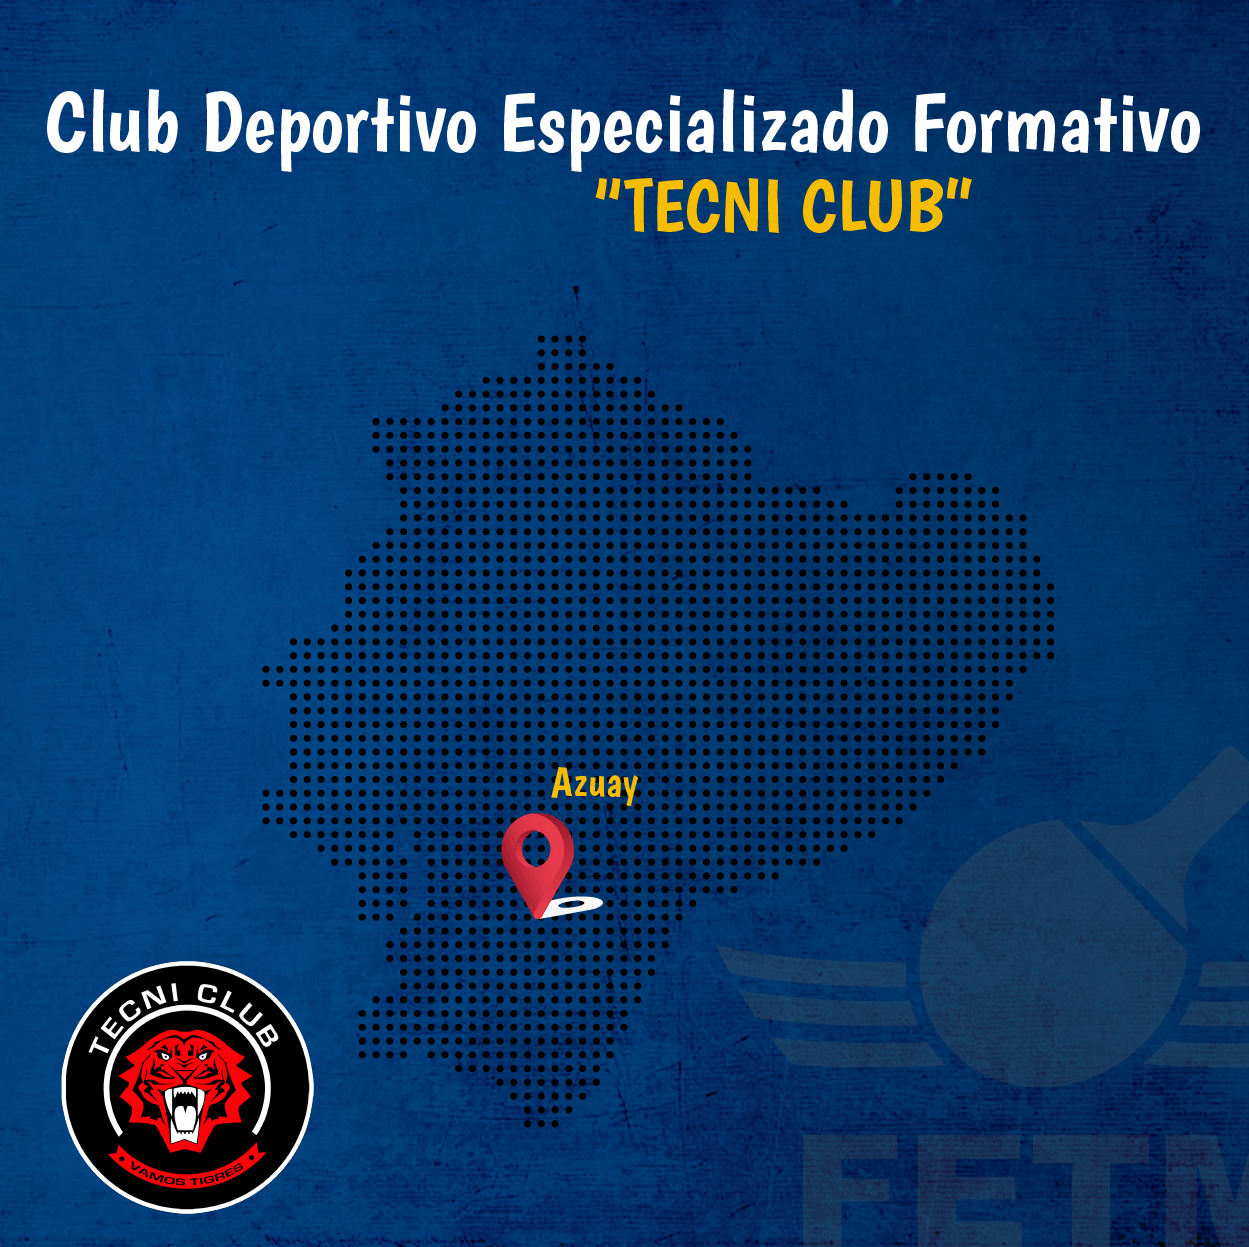 CLUB DEPORTIVO FORMATIVO ESPECIALIZADO DE TENIS DE MESA “TECNI CLUB”